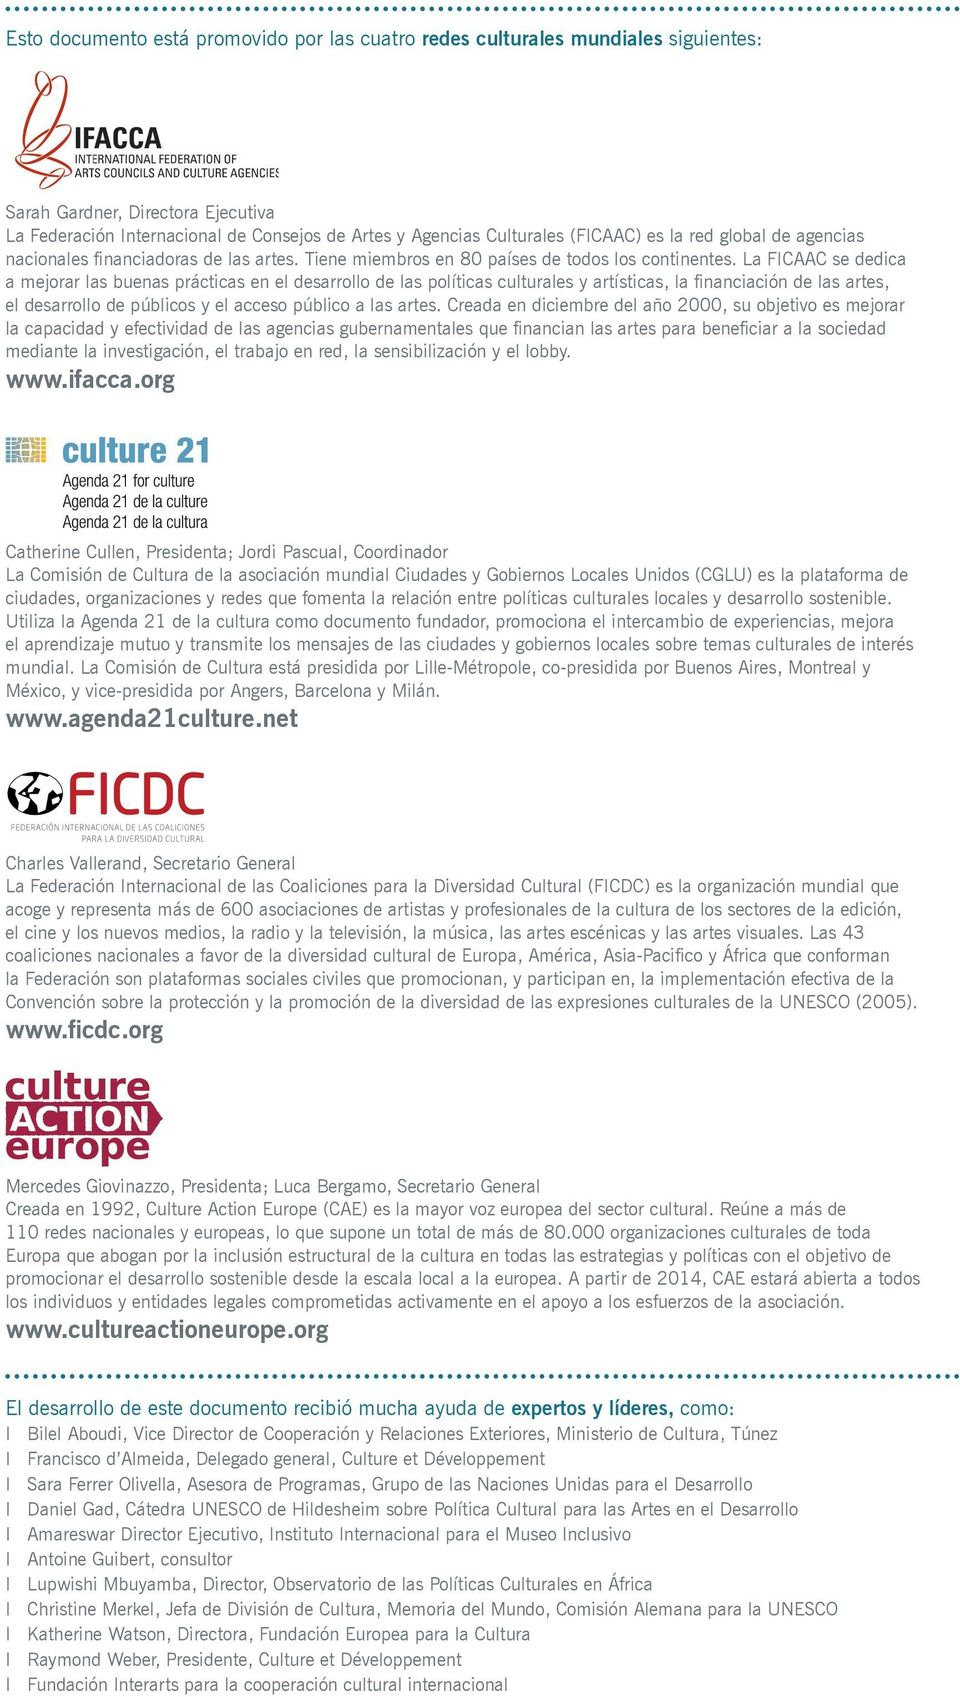 La FICAAC se dedica a mejorar las buenas prácticas en el desarrollo de las políticas culturales y artísticas, la financiación de las artes, el desarrollo de públicos y el acceso público a las artes.